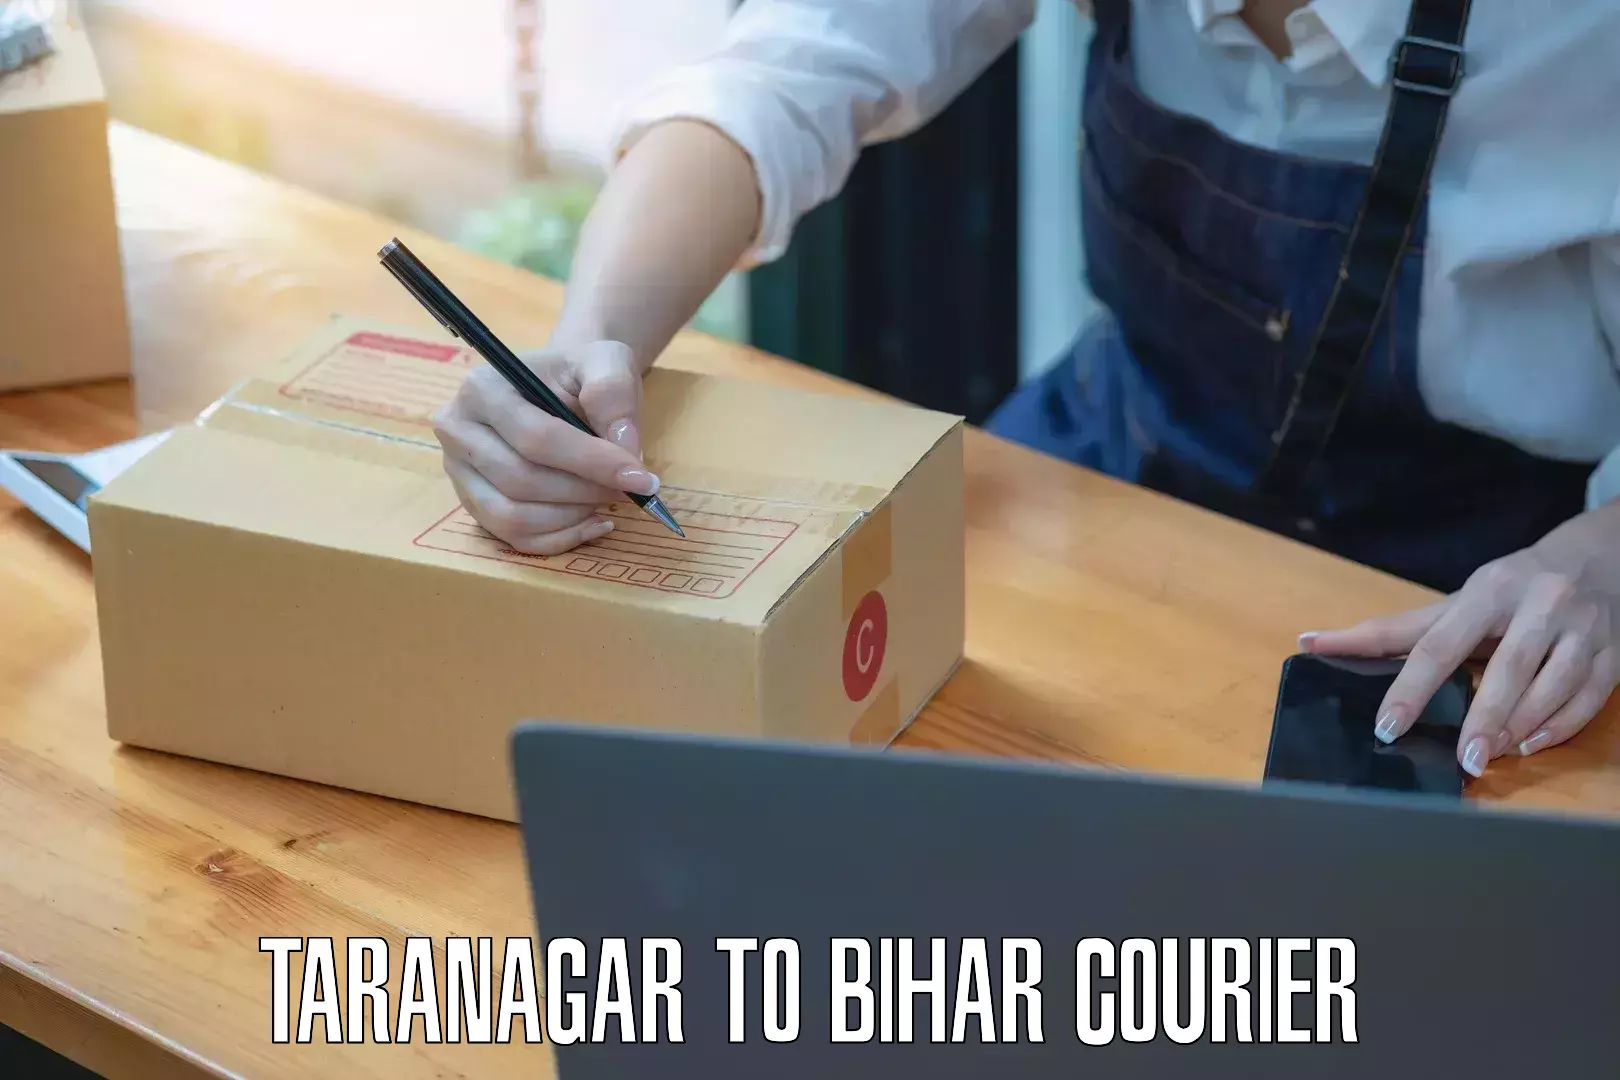 Personal courier services Taranagar to Bankipore